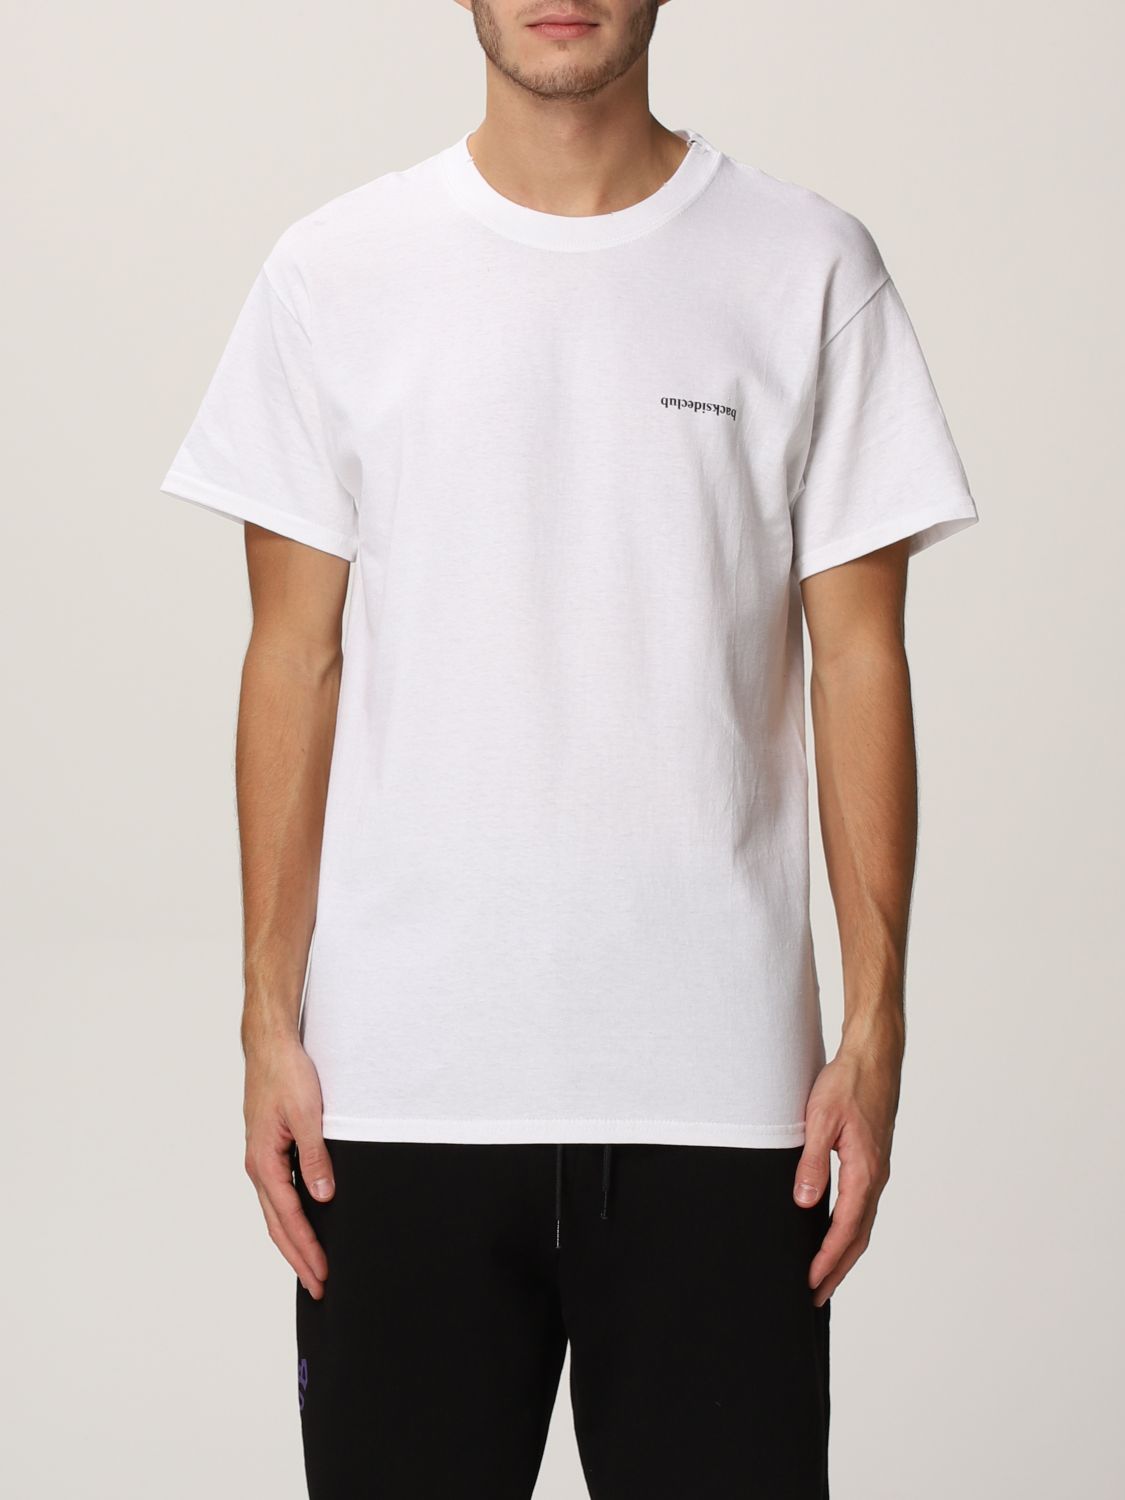 BACKSIDECLUB: t-shirt for man - White | Backsideclub t-shirt MH 308 ...